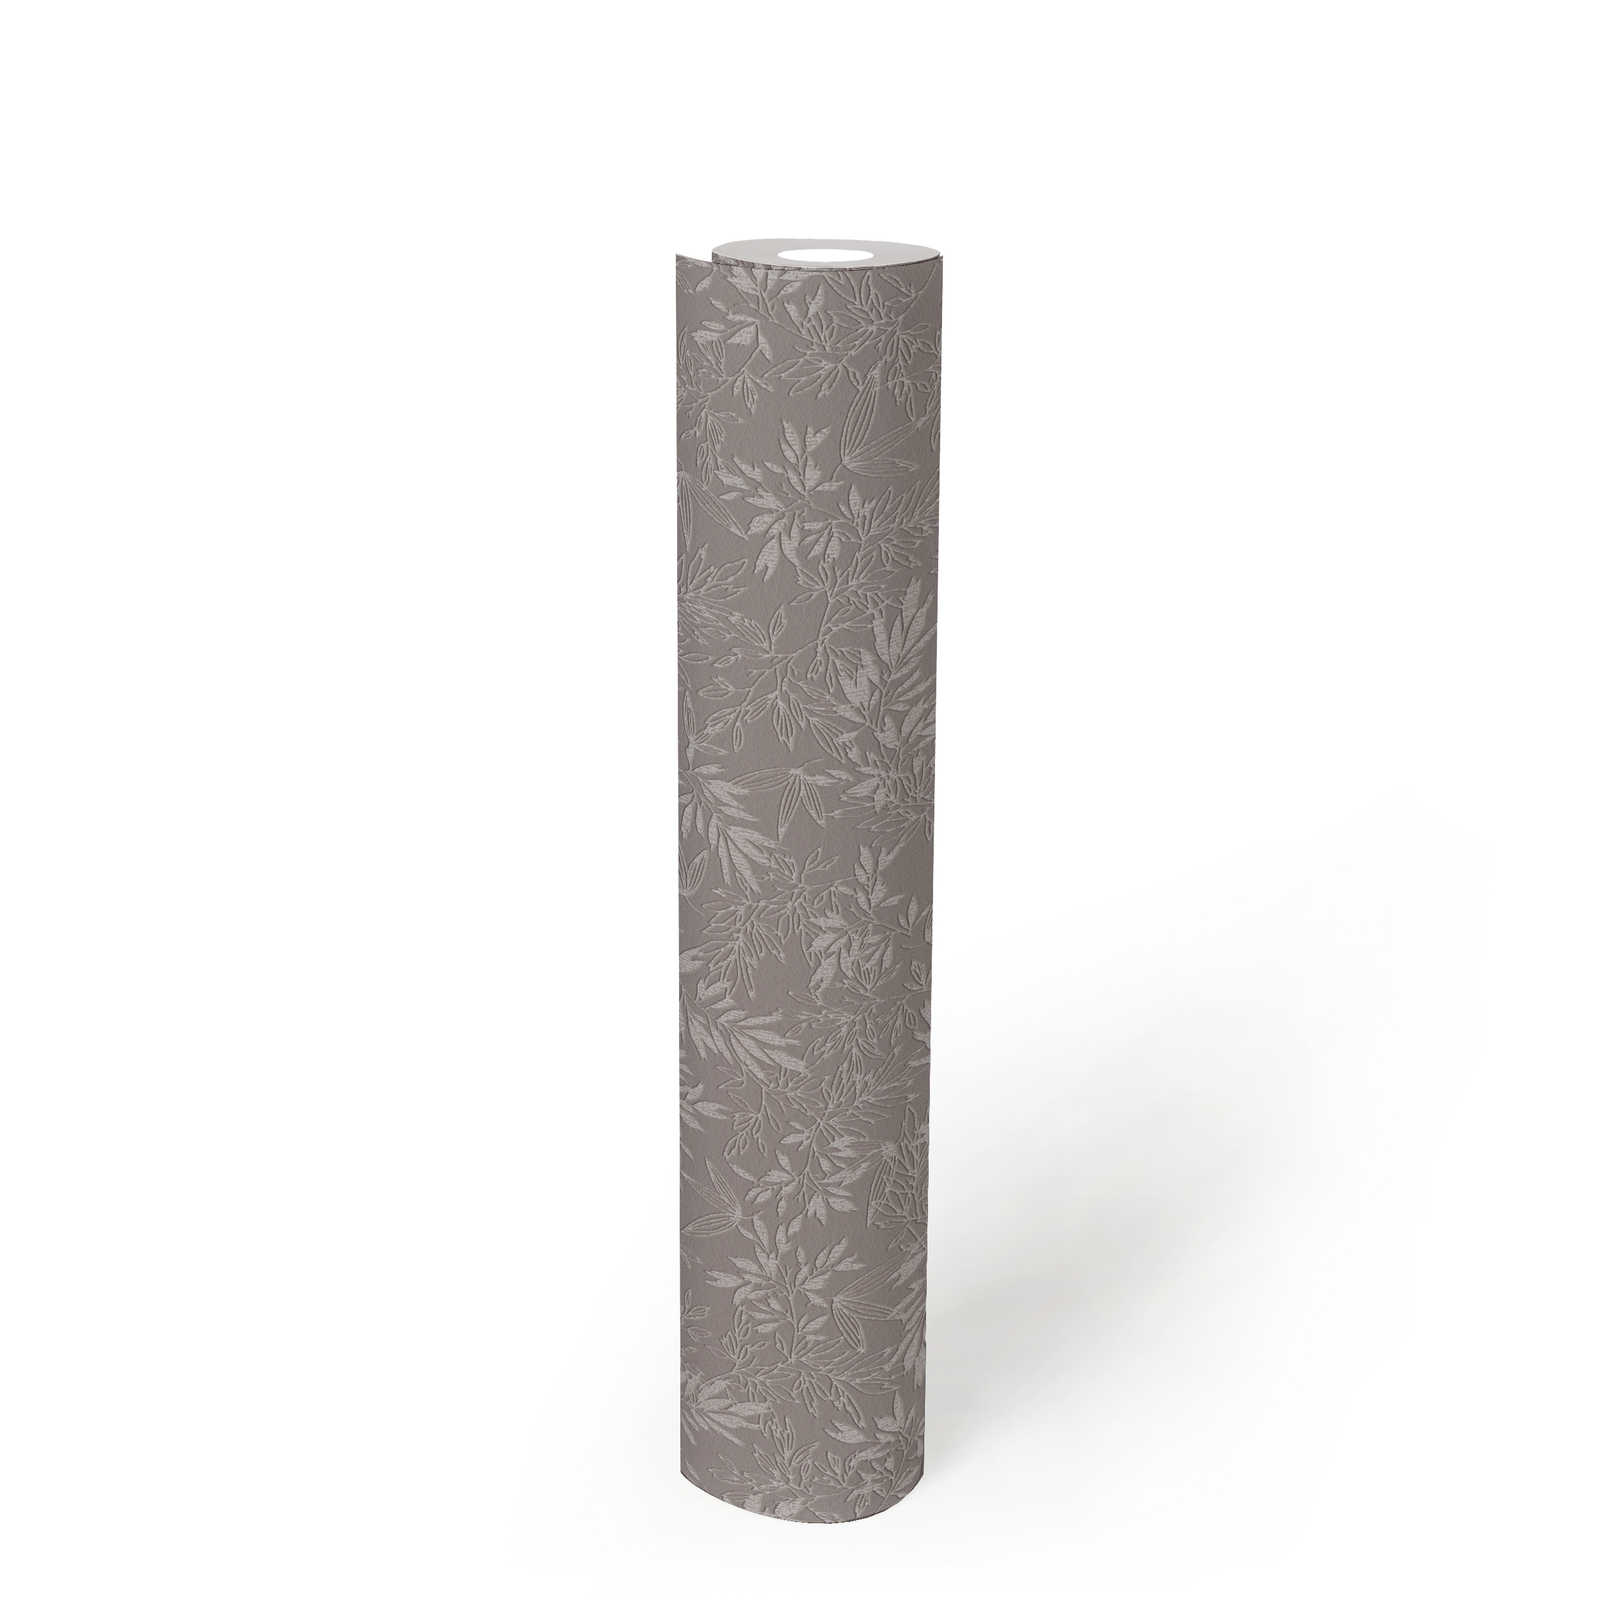             Carta da parati Foglie con struttura in schiuma opaca - grigio, grigio chiaro
        